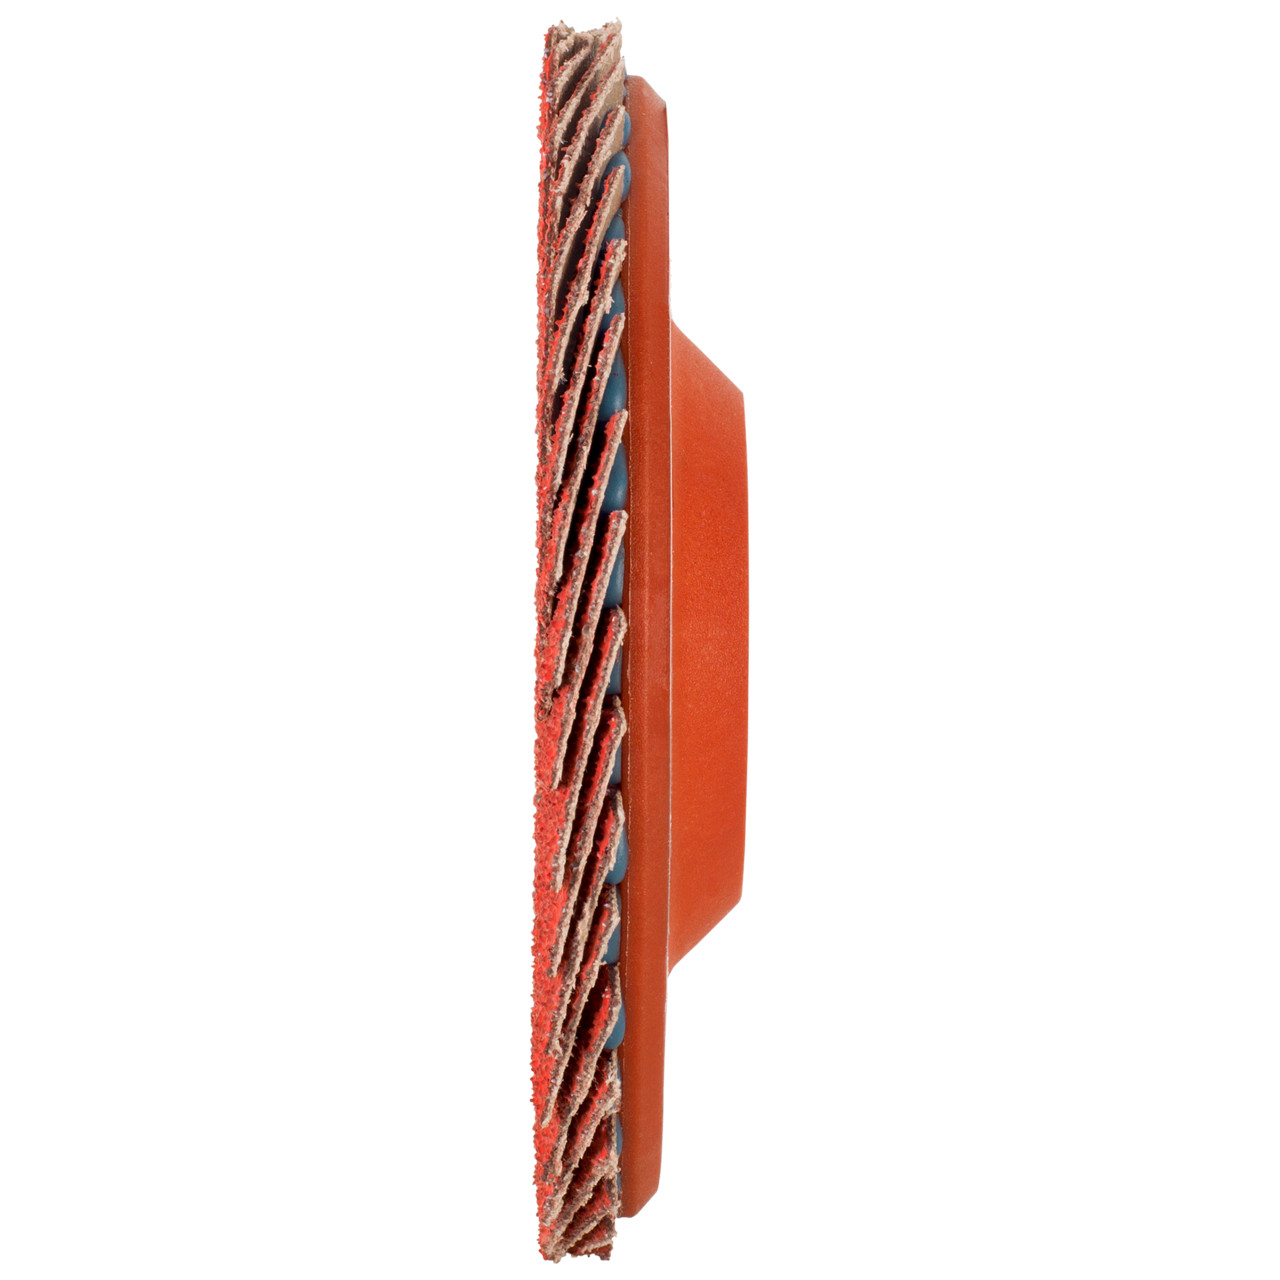 Tyrolit Arandela dentada DxH 125x22,23 CERÁMICA para acero inoxidable, P80, forma: 28N - versión recta (cuerpo portador de plástico), Art. 34166865